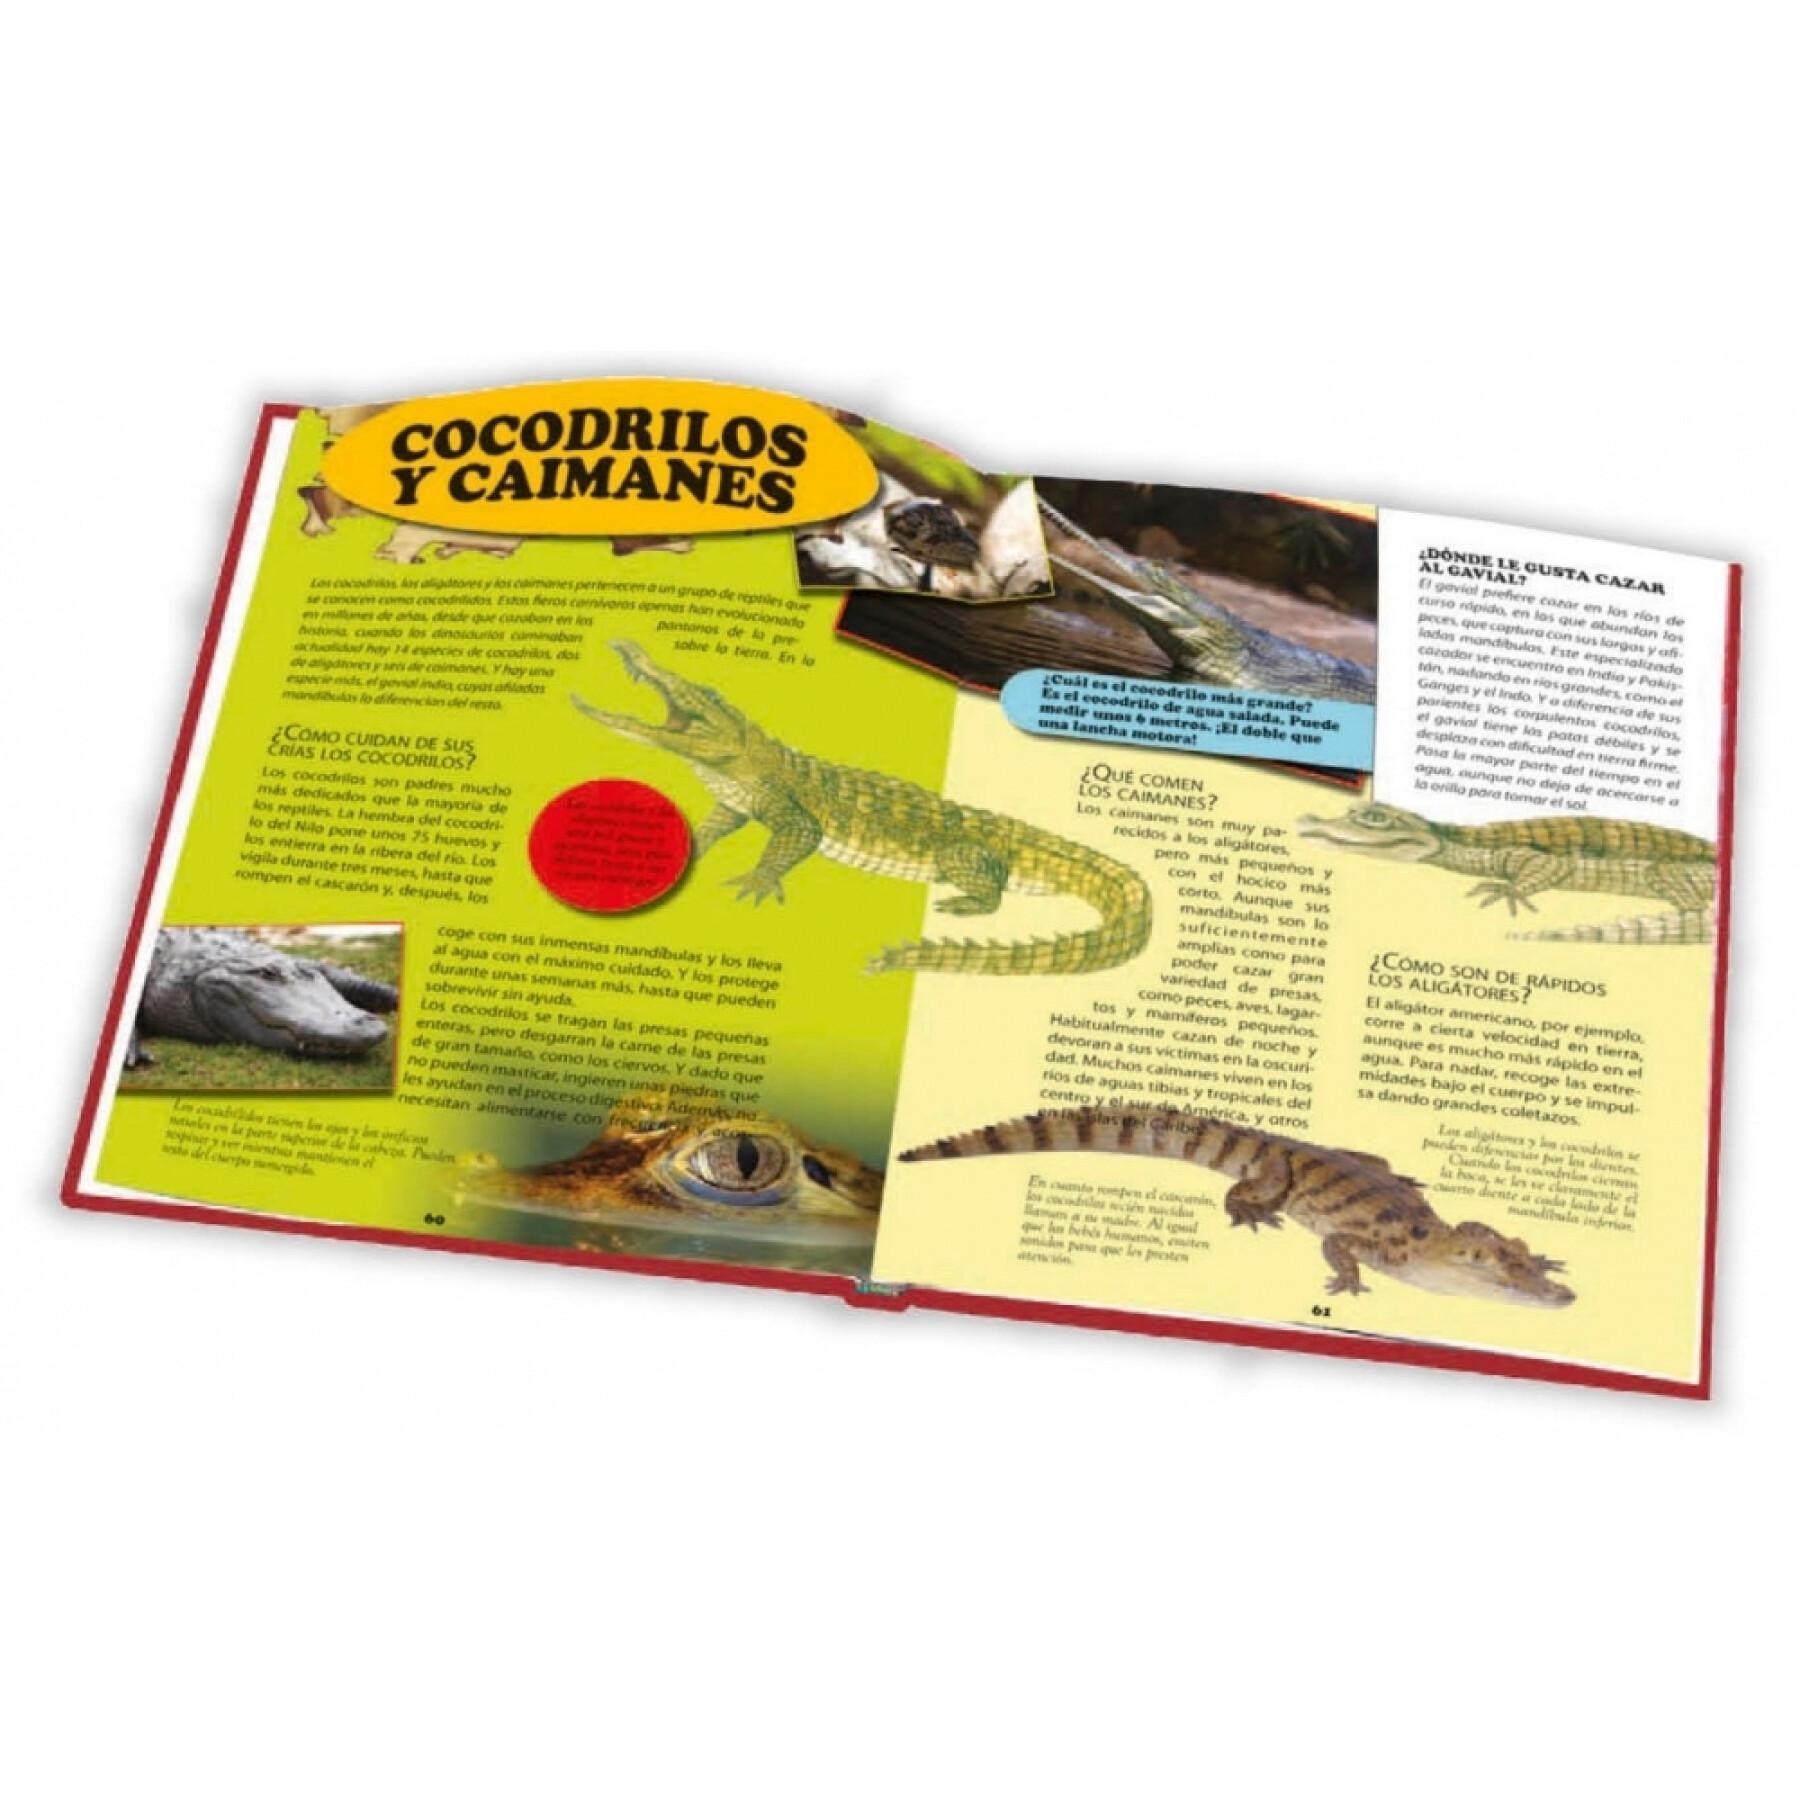 Buch 28 Seiten Enzyklopädie der Tiere Ediciones Saldaña